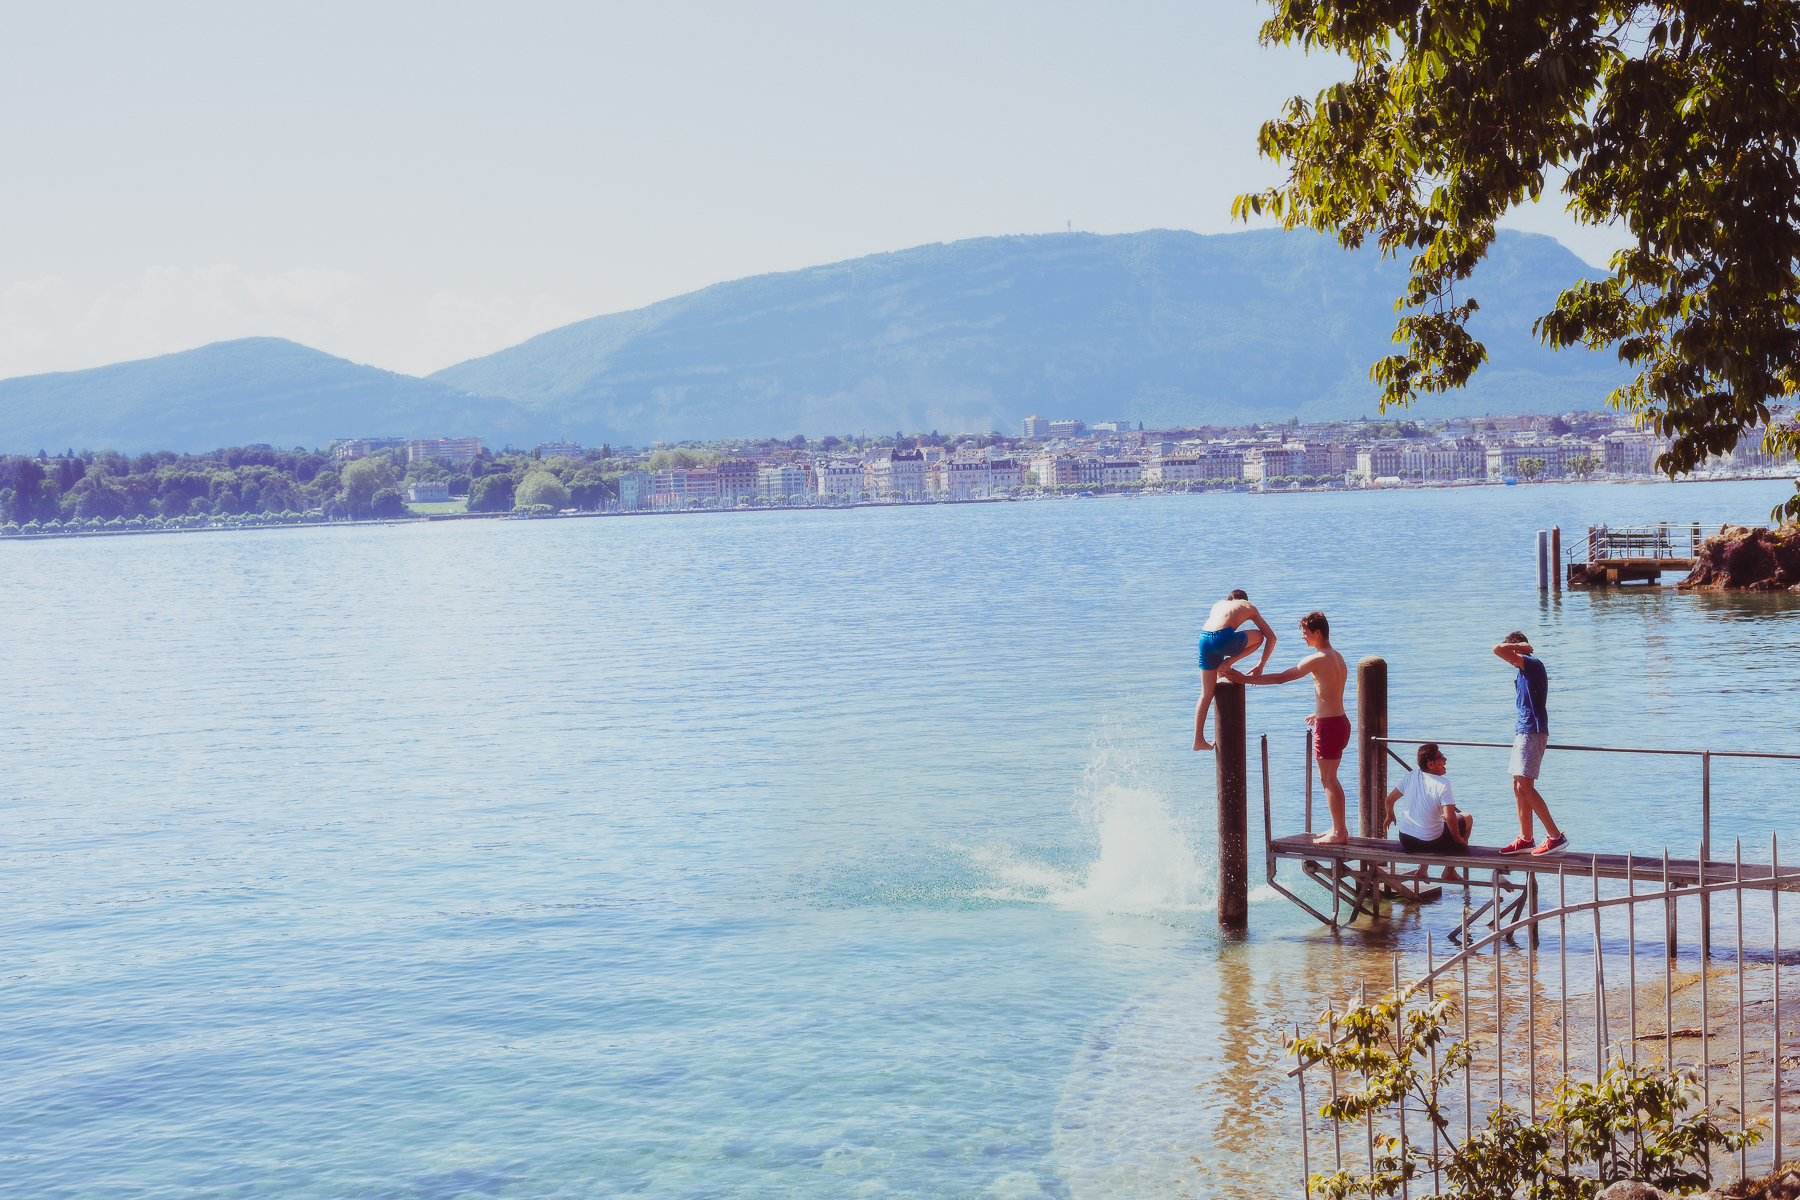 Des jeunes vacanciers profitent de la fraîcheur des eaux du lac.